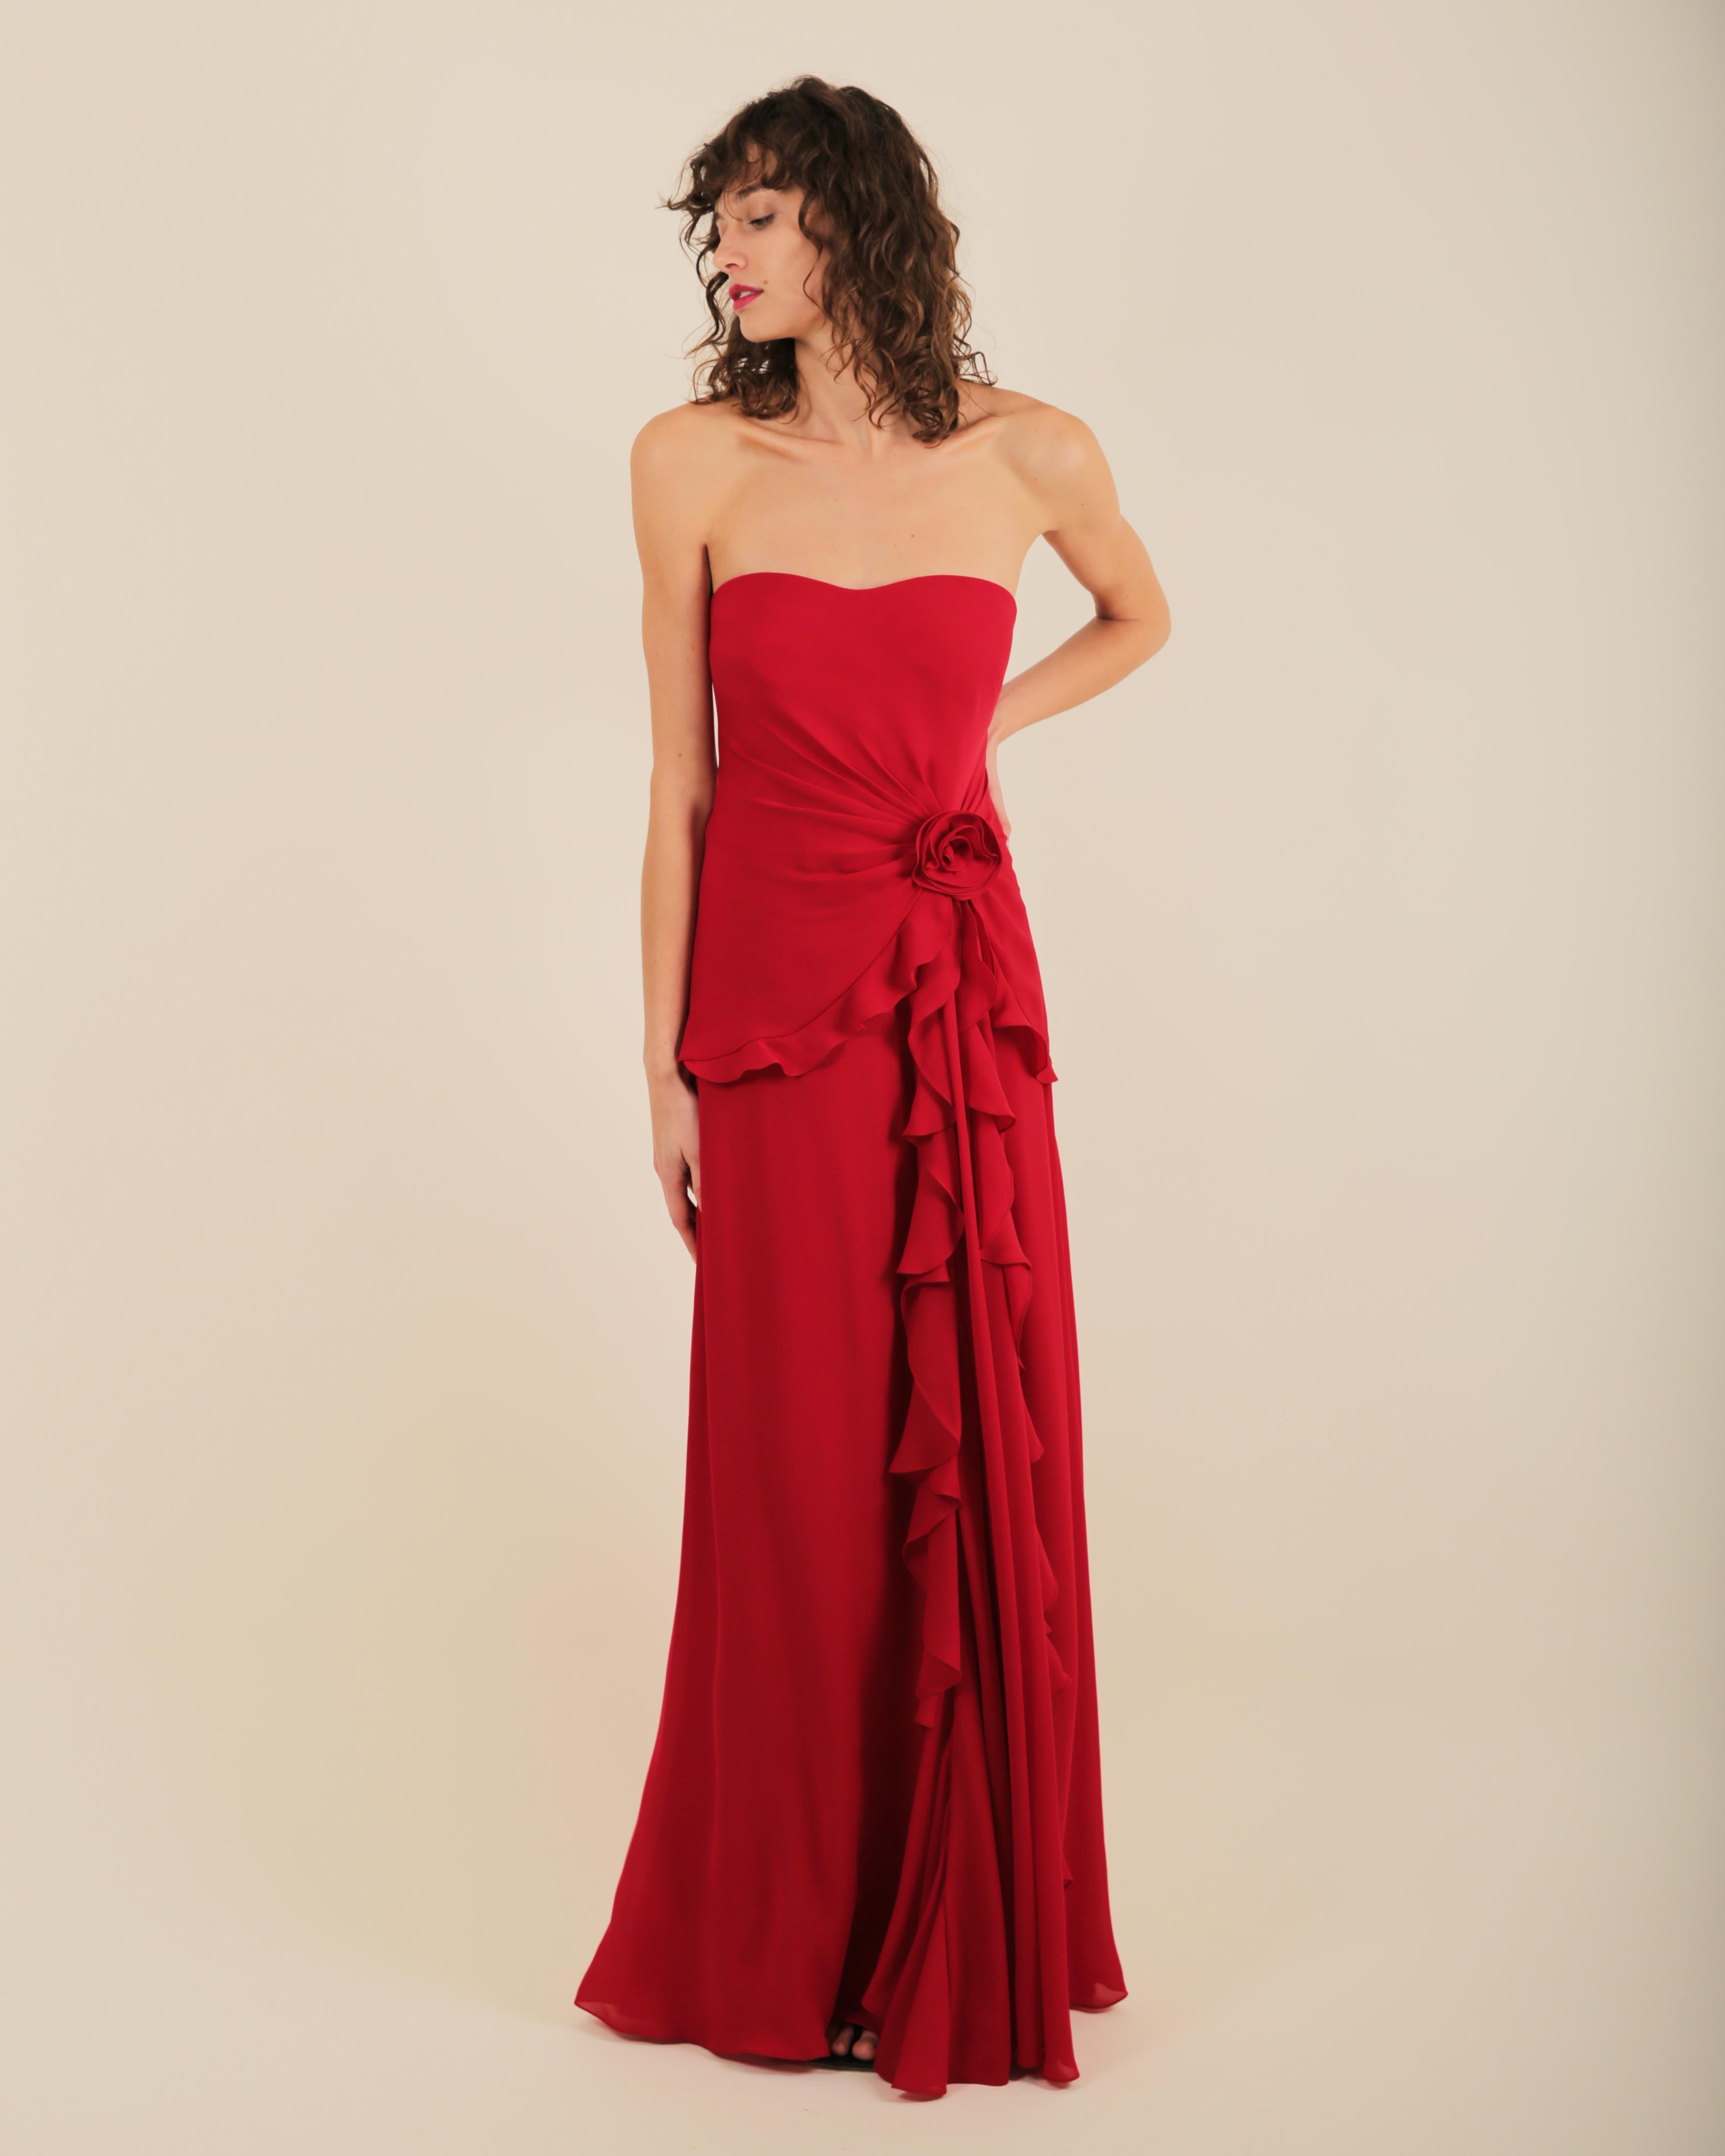 Ralph Lauren SS 2013 strapless bustier red sweetheart neck train silk gown dress 10